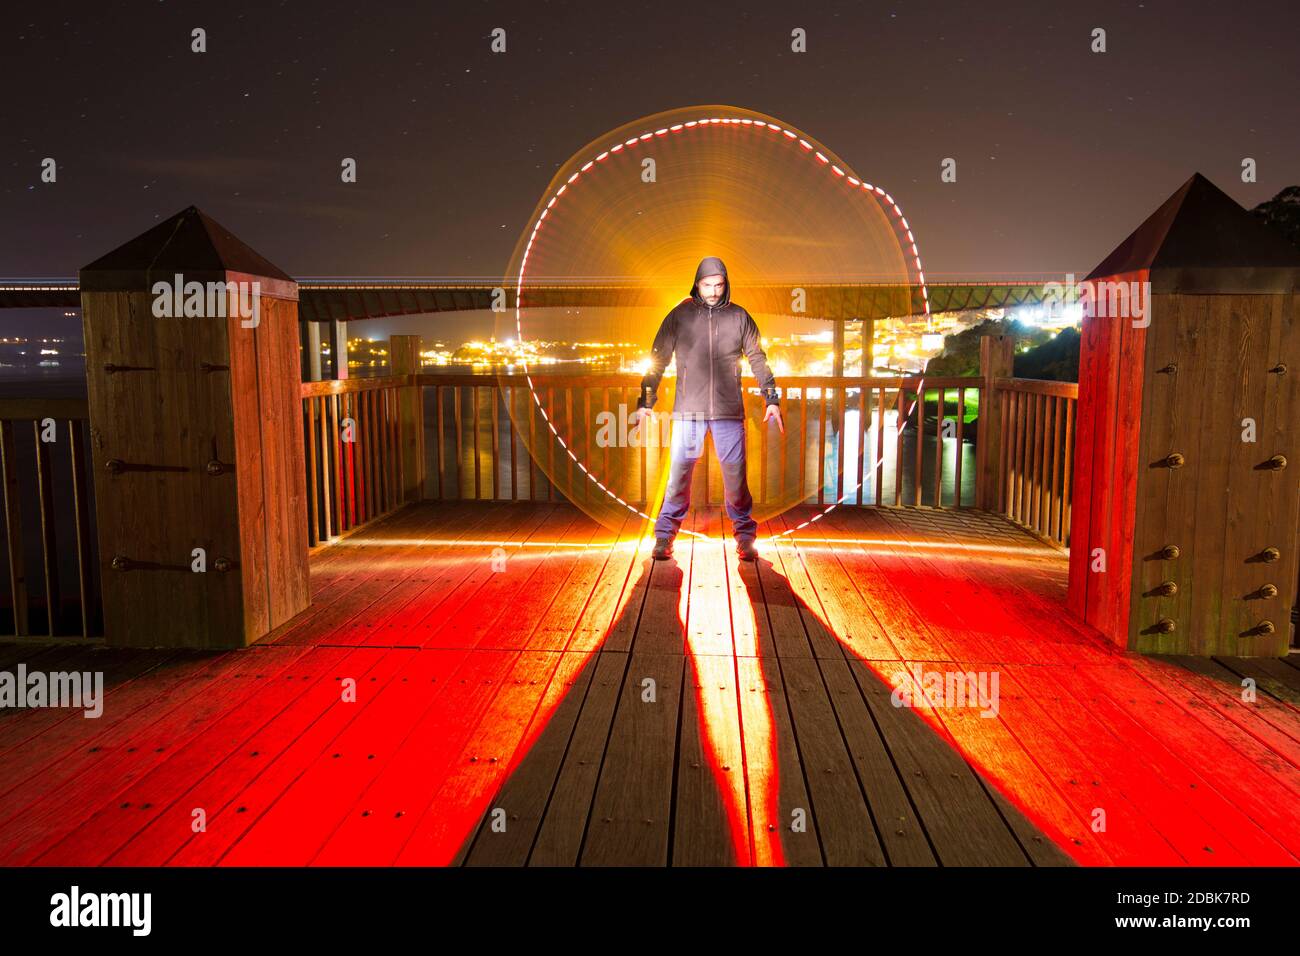 Homme illuminé de techniques de peinture lumineuse avec lumière artificielle sur le pont d'une falaise. Banque D'Images